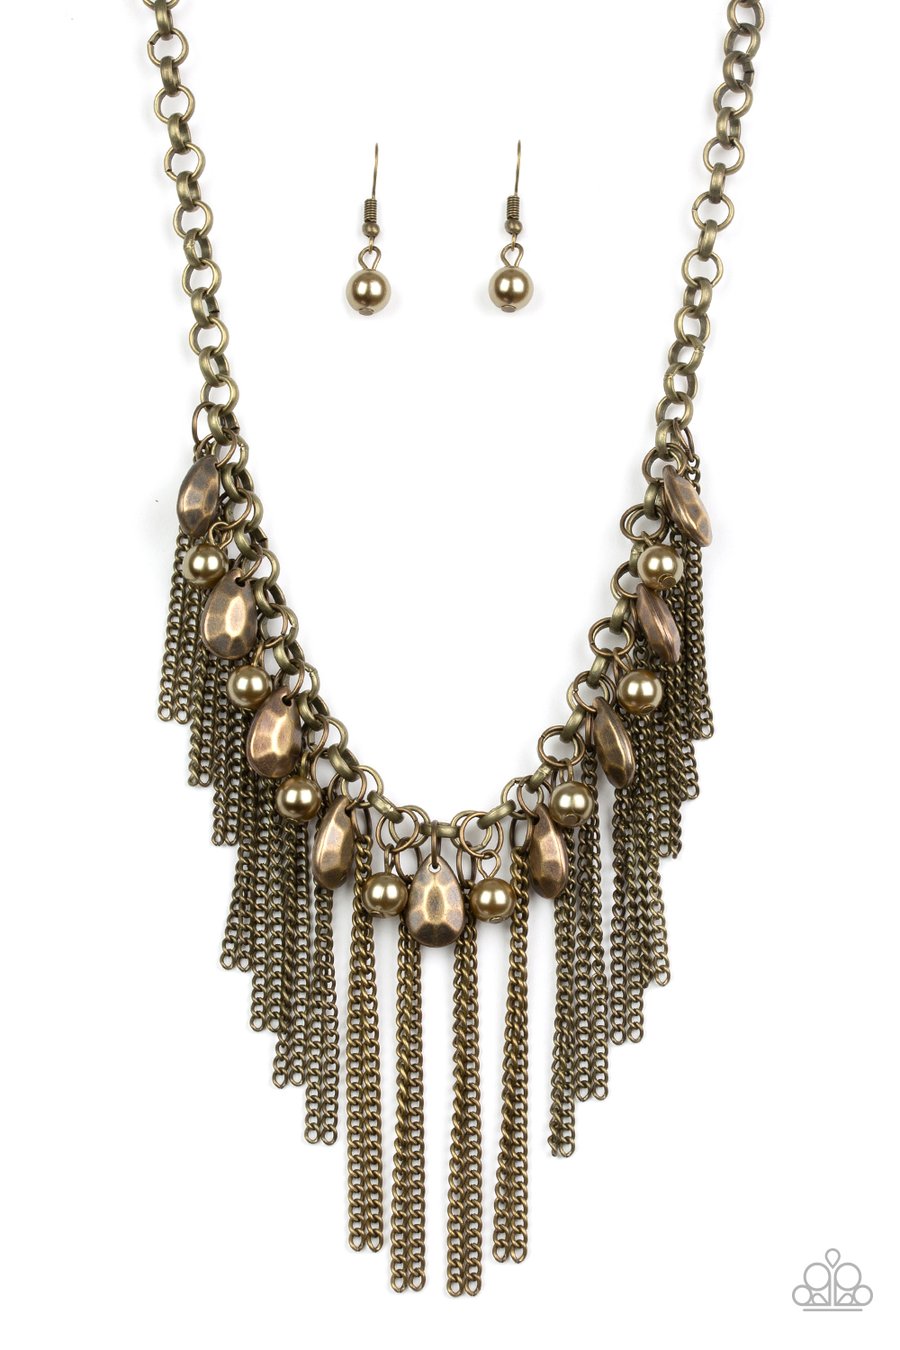 Industrial Intensity Brass Necklace - Daria's Blings N Things